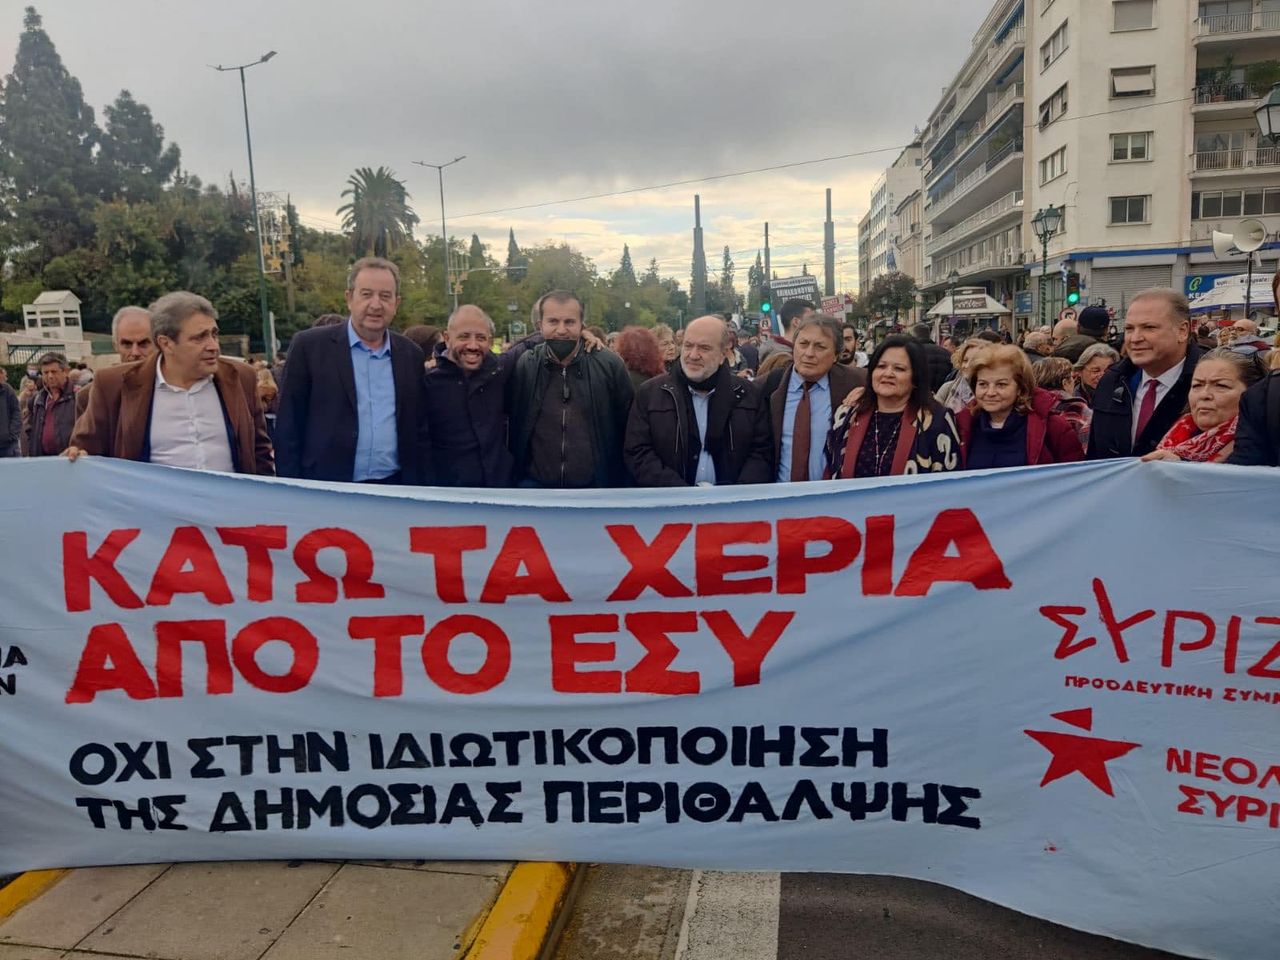 Στη συγκέντρωση διαμαρτυρίας για το νομοσχέδιο που προωθεί τη διάλυση του ΕΣΥ ο Αλ. Μεϊκόπουλος